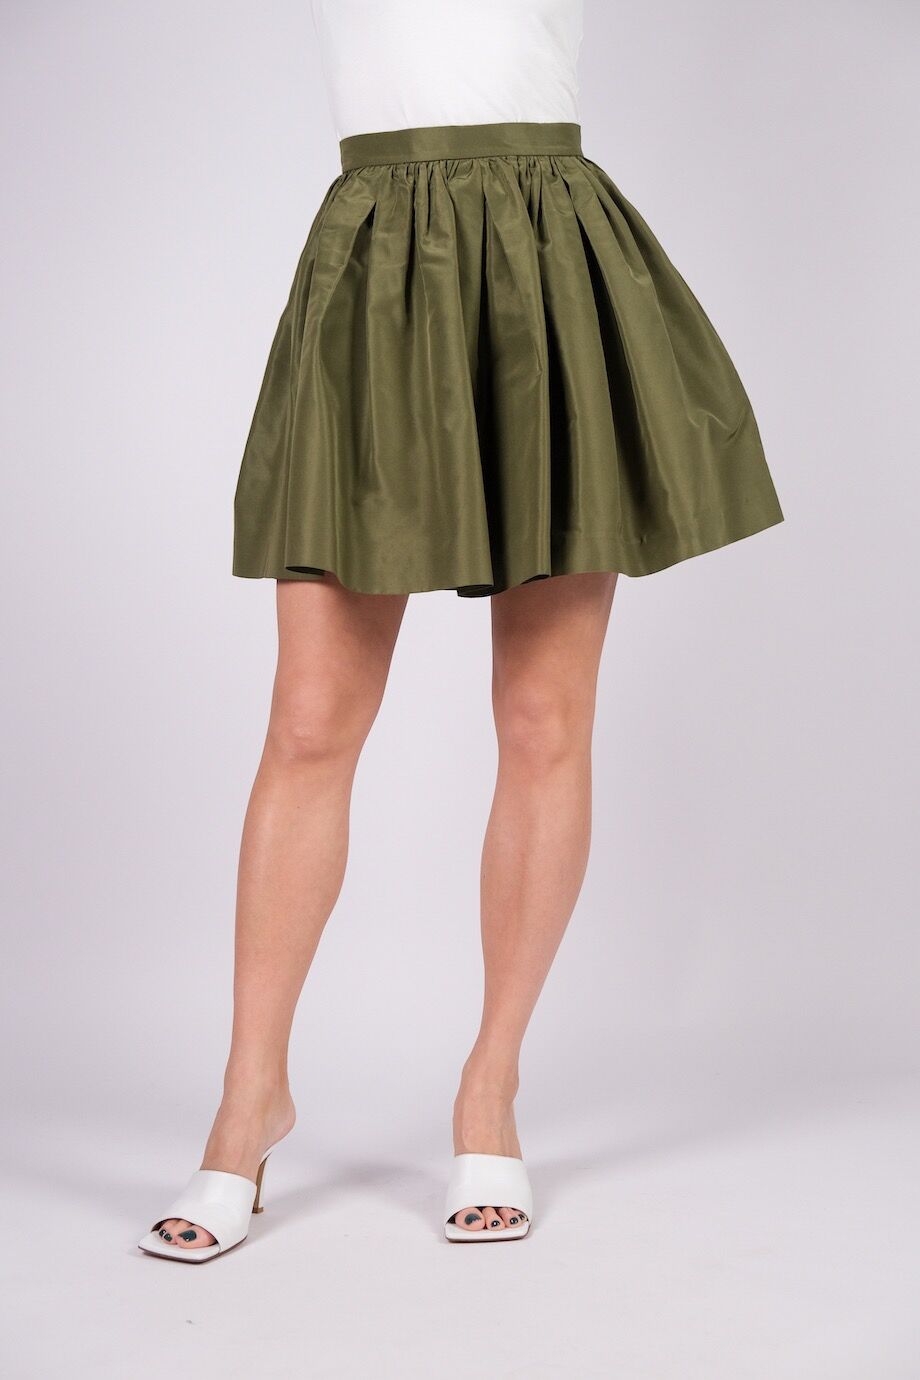 image 2 Шелковая юбка пышного кроя выше колена